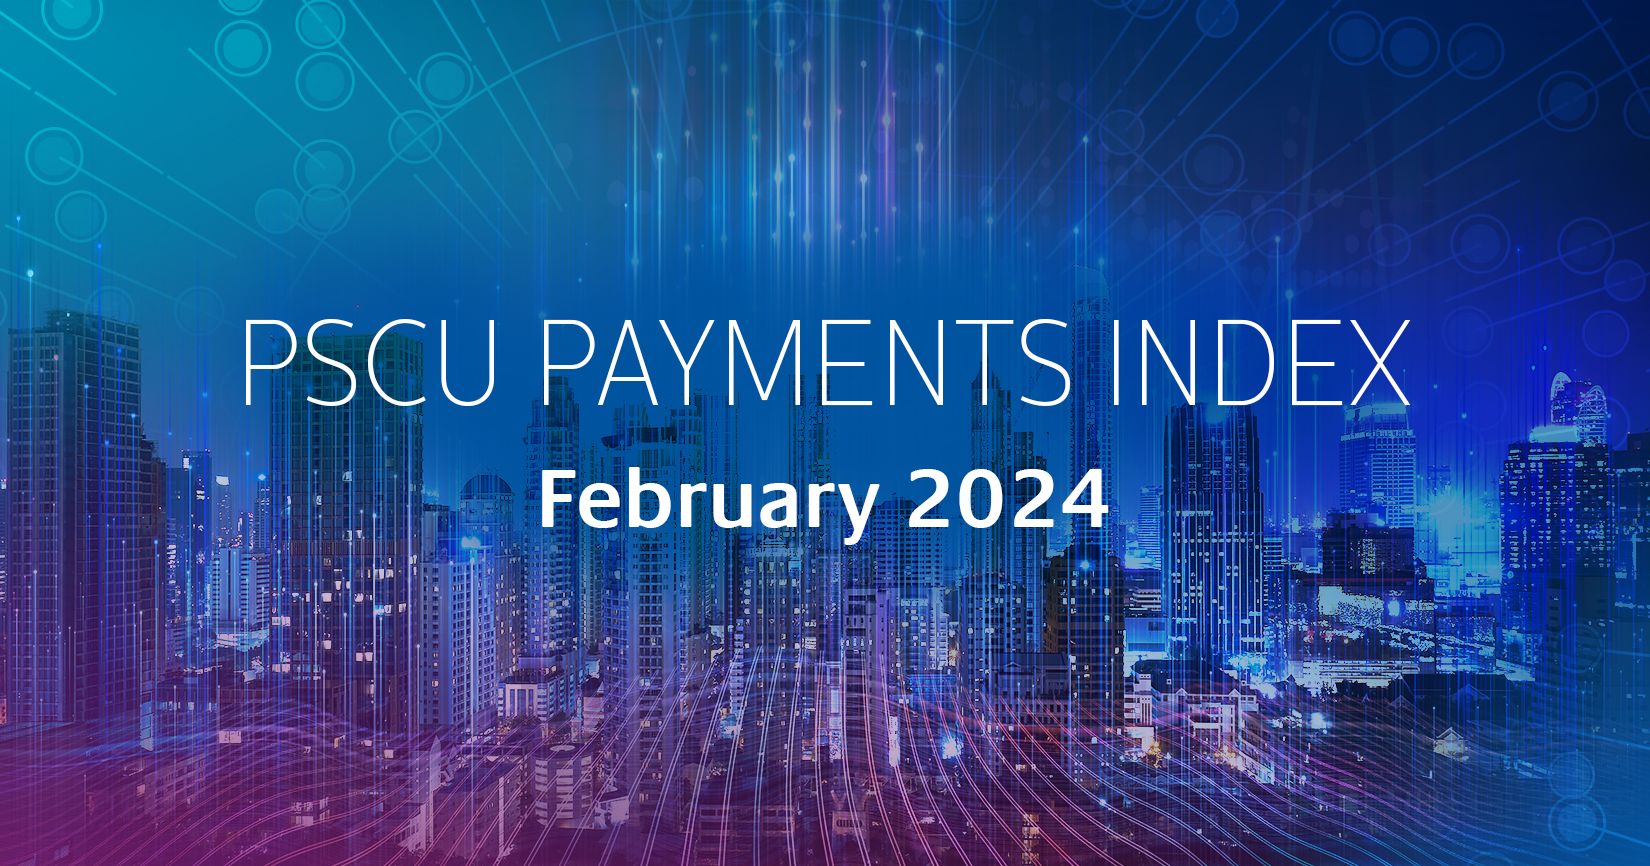 "PSCU Payments Index February 2024: A Deep Dive into Delinquencies post thumbnail"